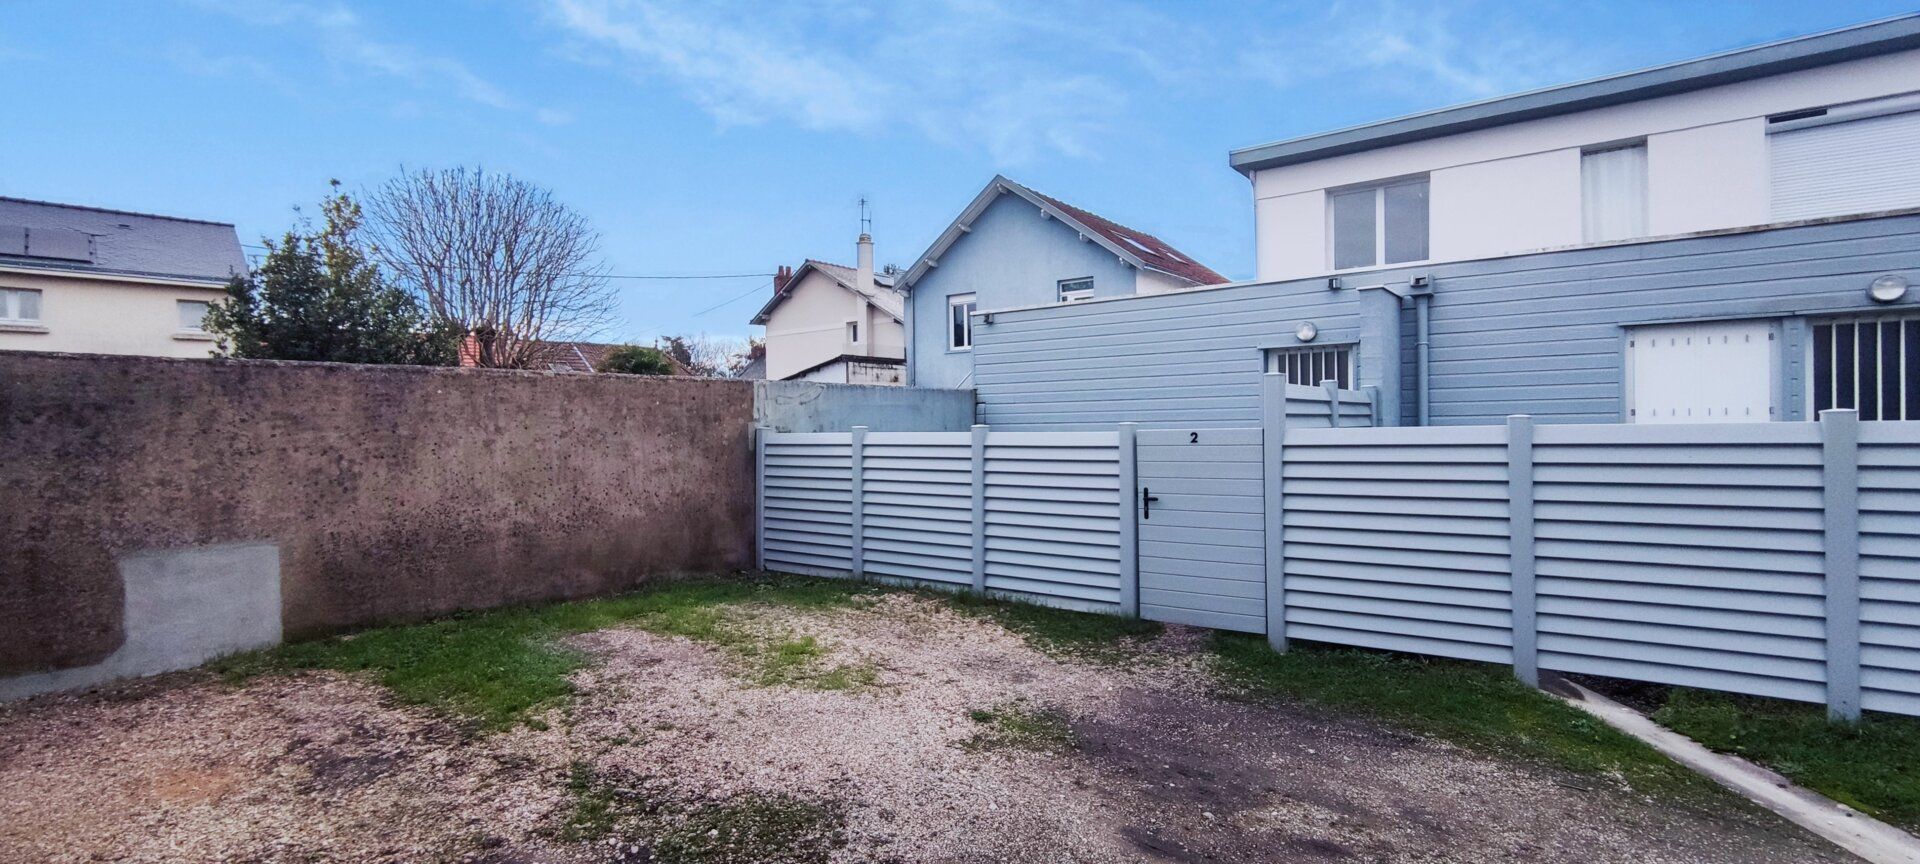 Appartement à vendre 2 45m2 à Thouaré-sur-Loire vignette-5